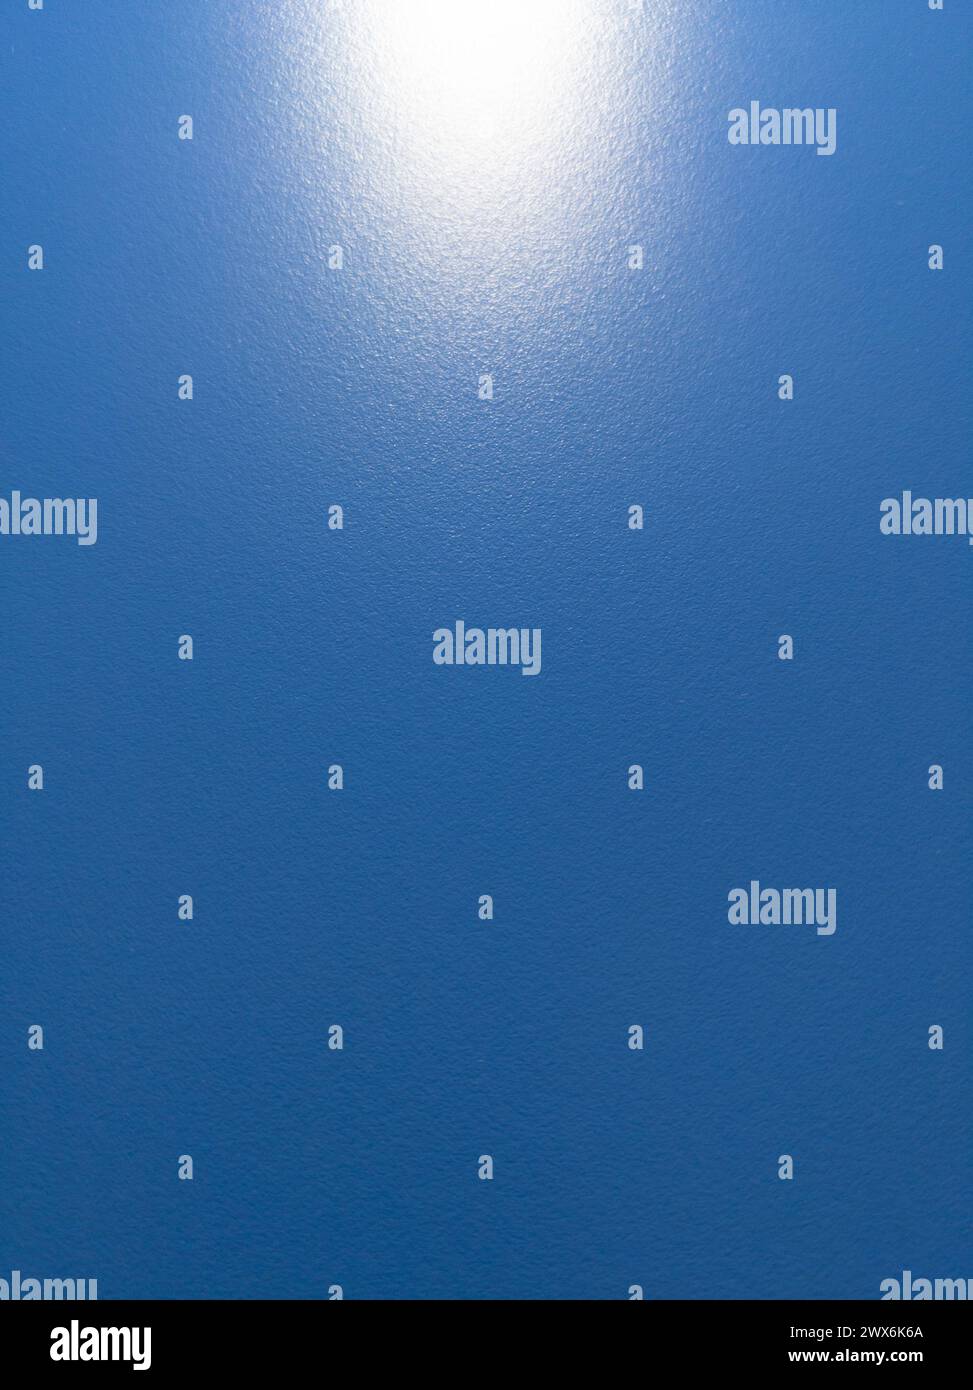 Blauer Bildschirm aus rauem, strukturiertem Material mit einem Blitz von künstlichem Licht am Ende Bild mit Kopierraum Stockfoto